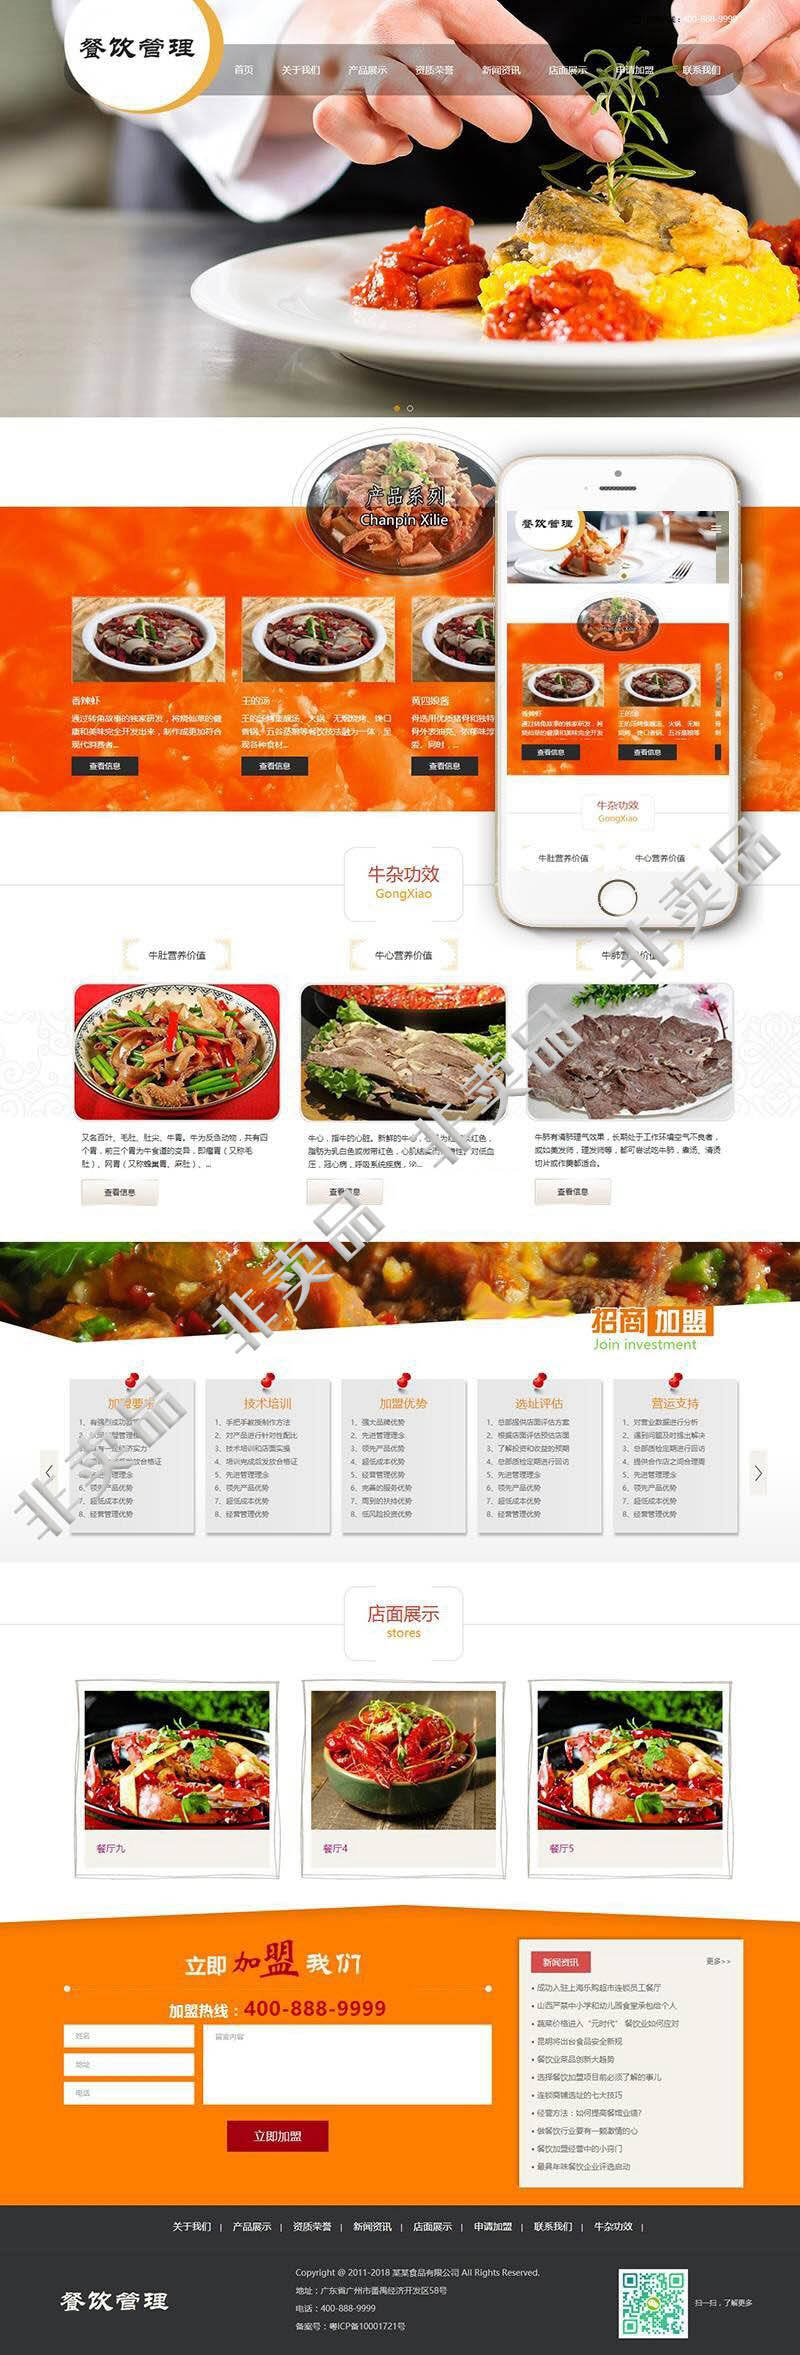 响应式 餐饮管理小吃类网站源码 dedecms织梦模板 带手机端插图